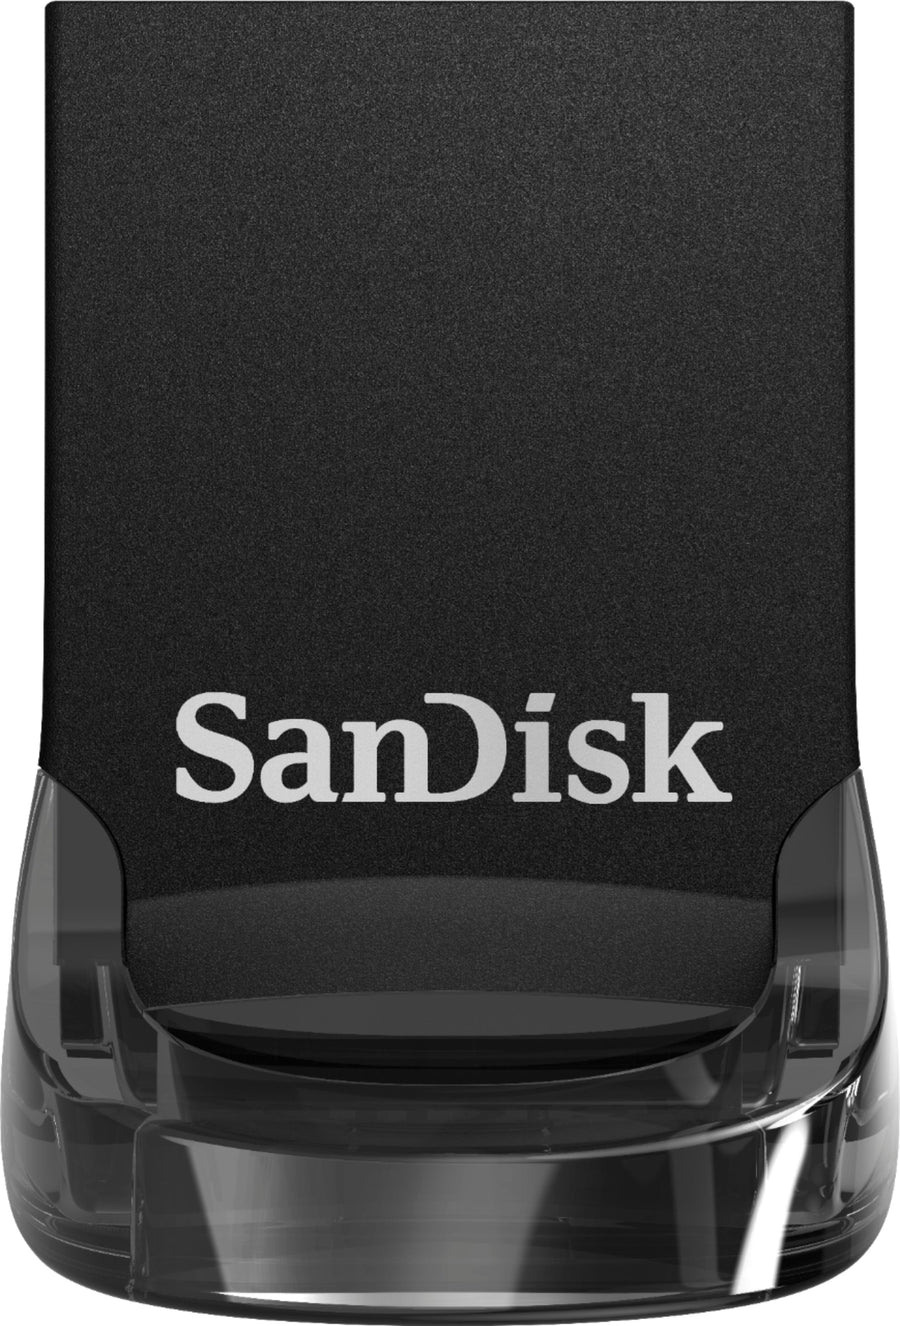 SanDisk - Ultra Fit 256GB USB 3.1 Flash Drive - Black_0